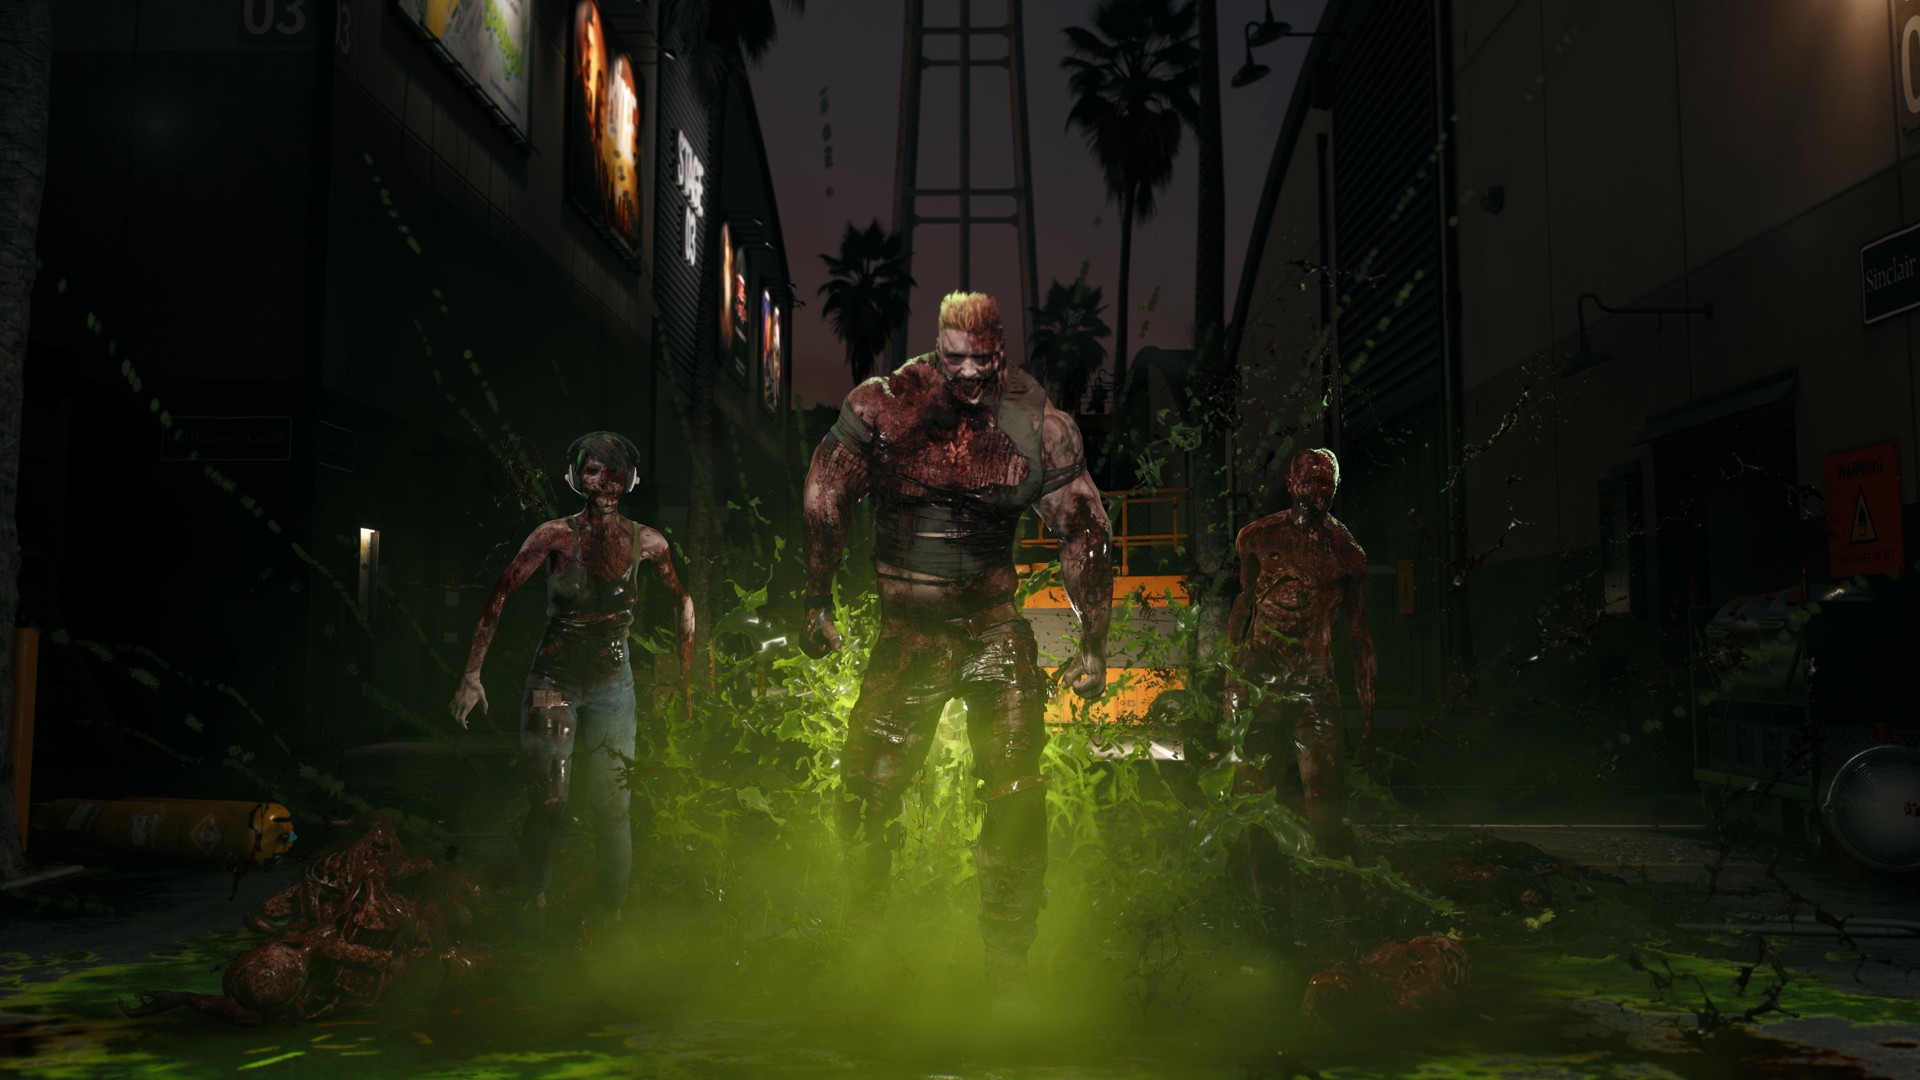 Dead Island 2: Como fazer crossplay (Xbox One, Xbox Series X